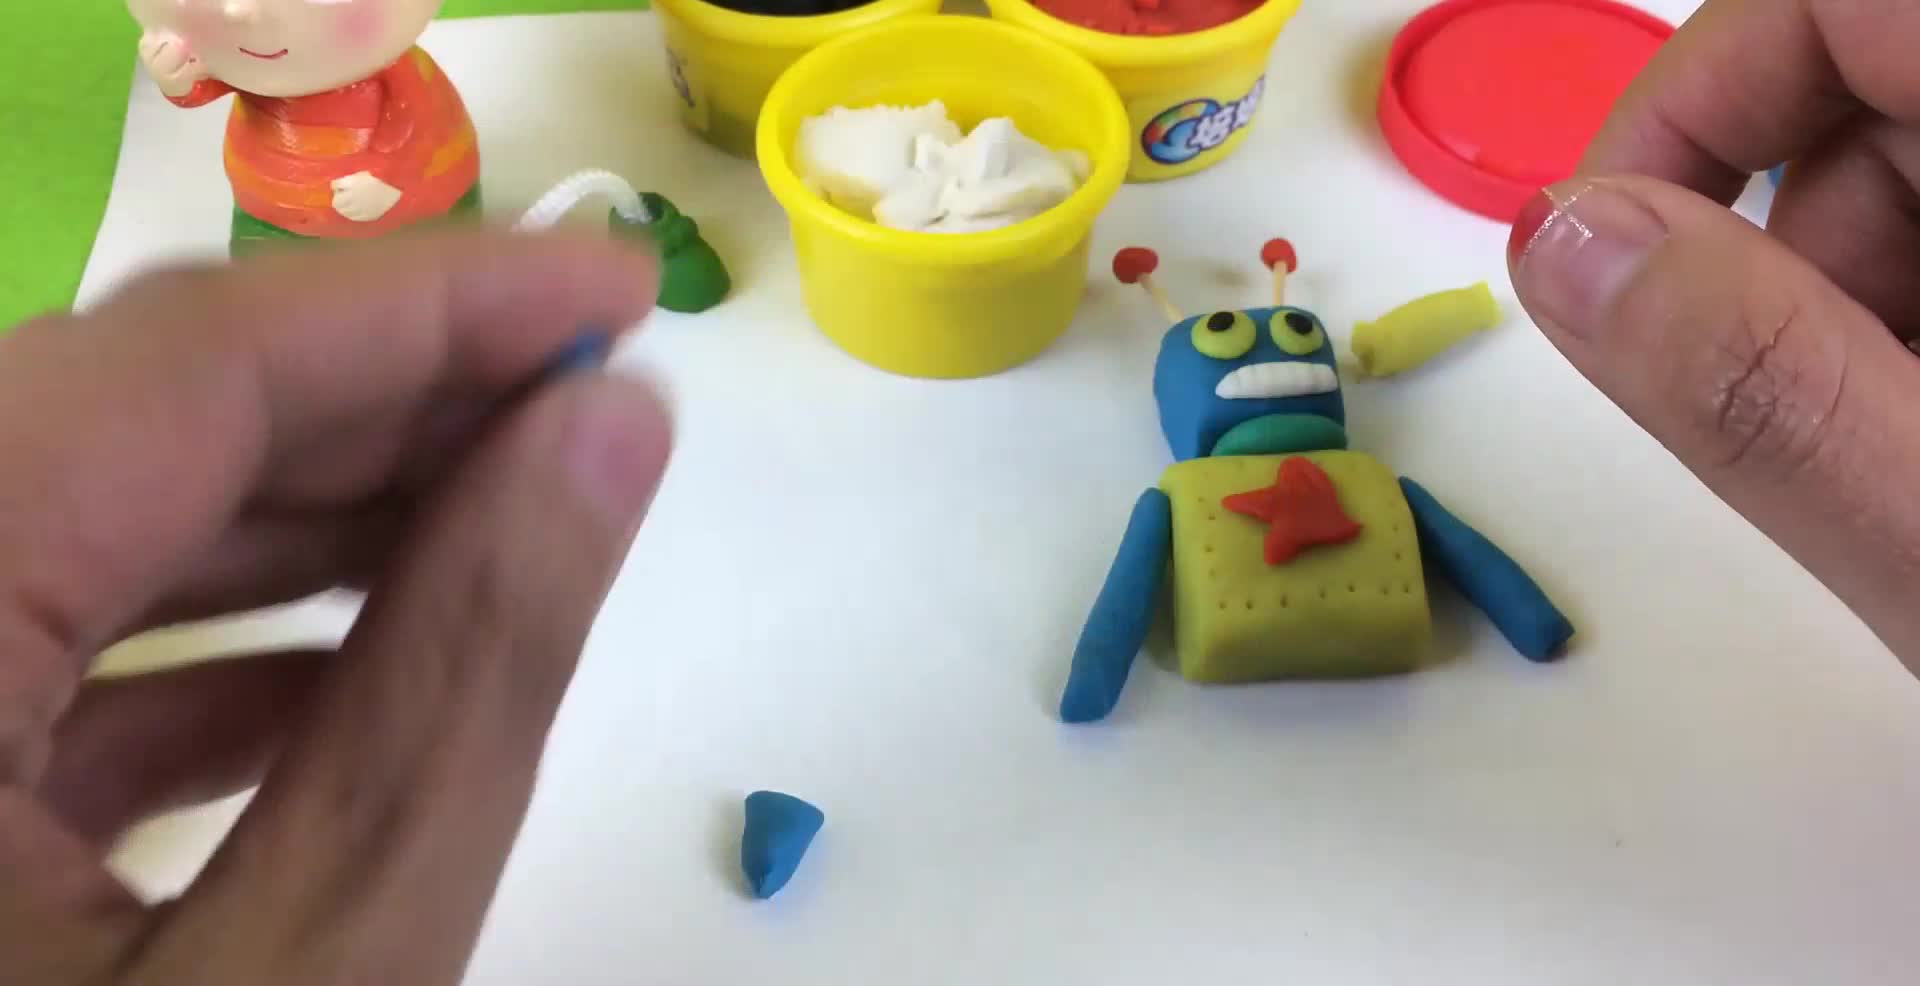 大头儿子橡皮泥制作机器人玩具_培乐多彩泥黏土_473